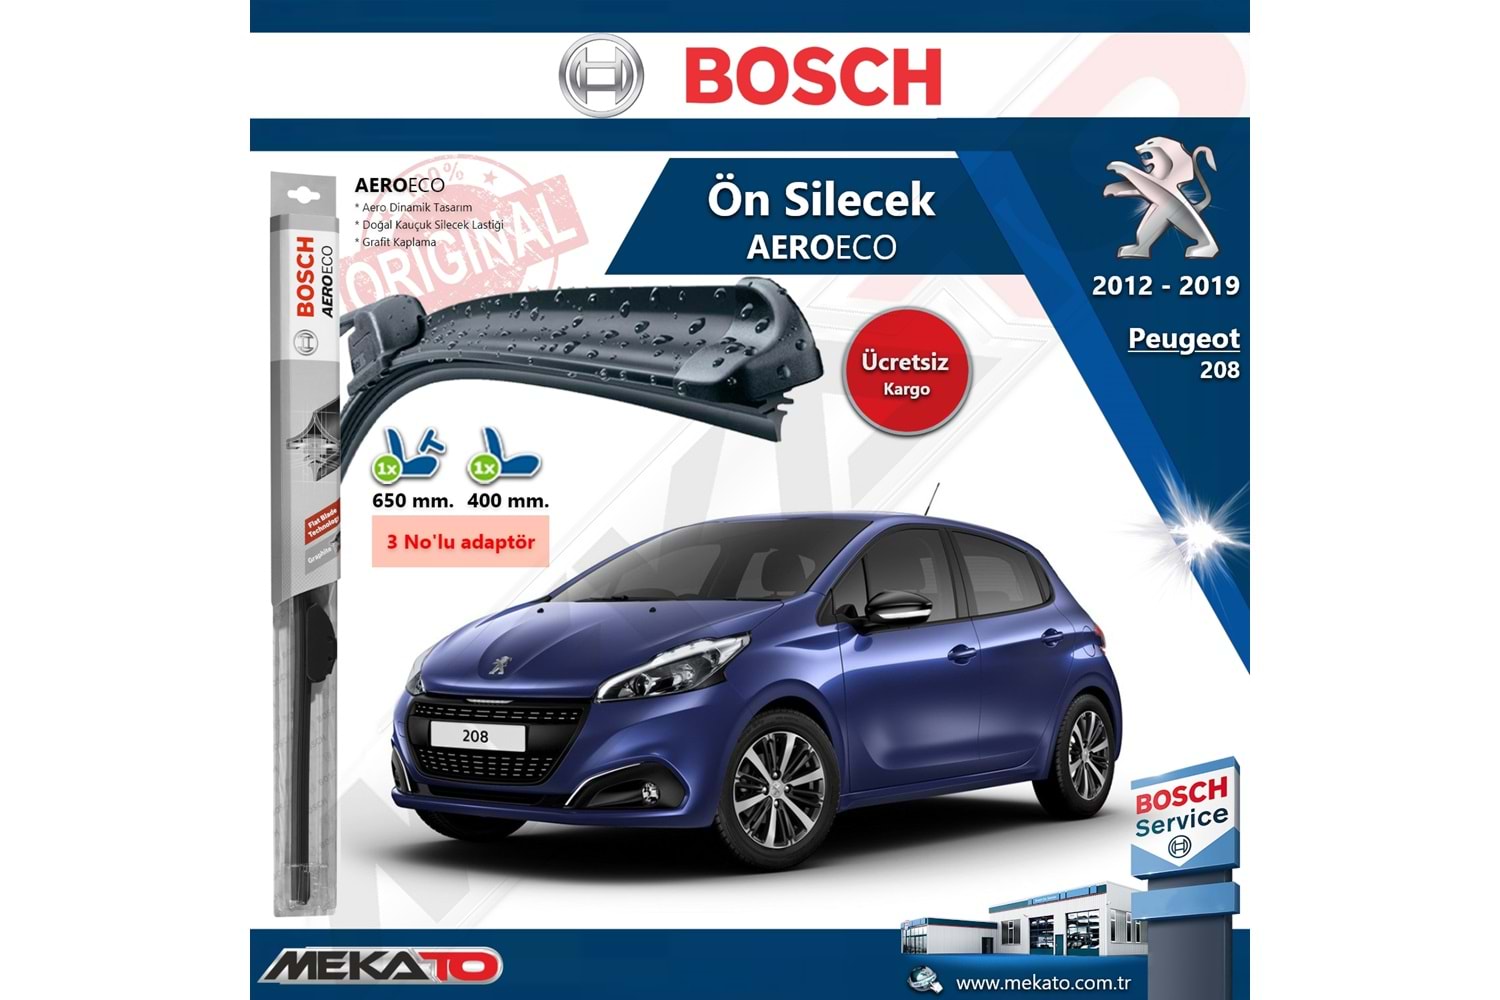 Peugeot 208 Ön Silecek Takımı Bosch Aero Eco 2012-2019